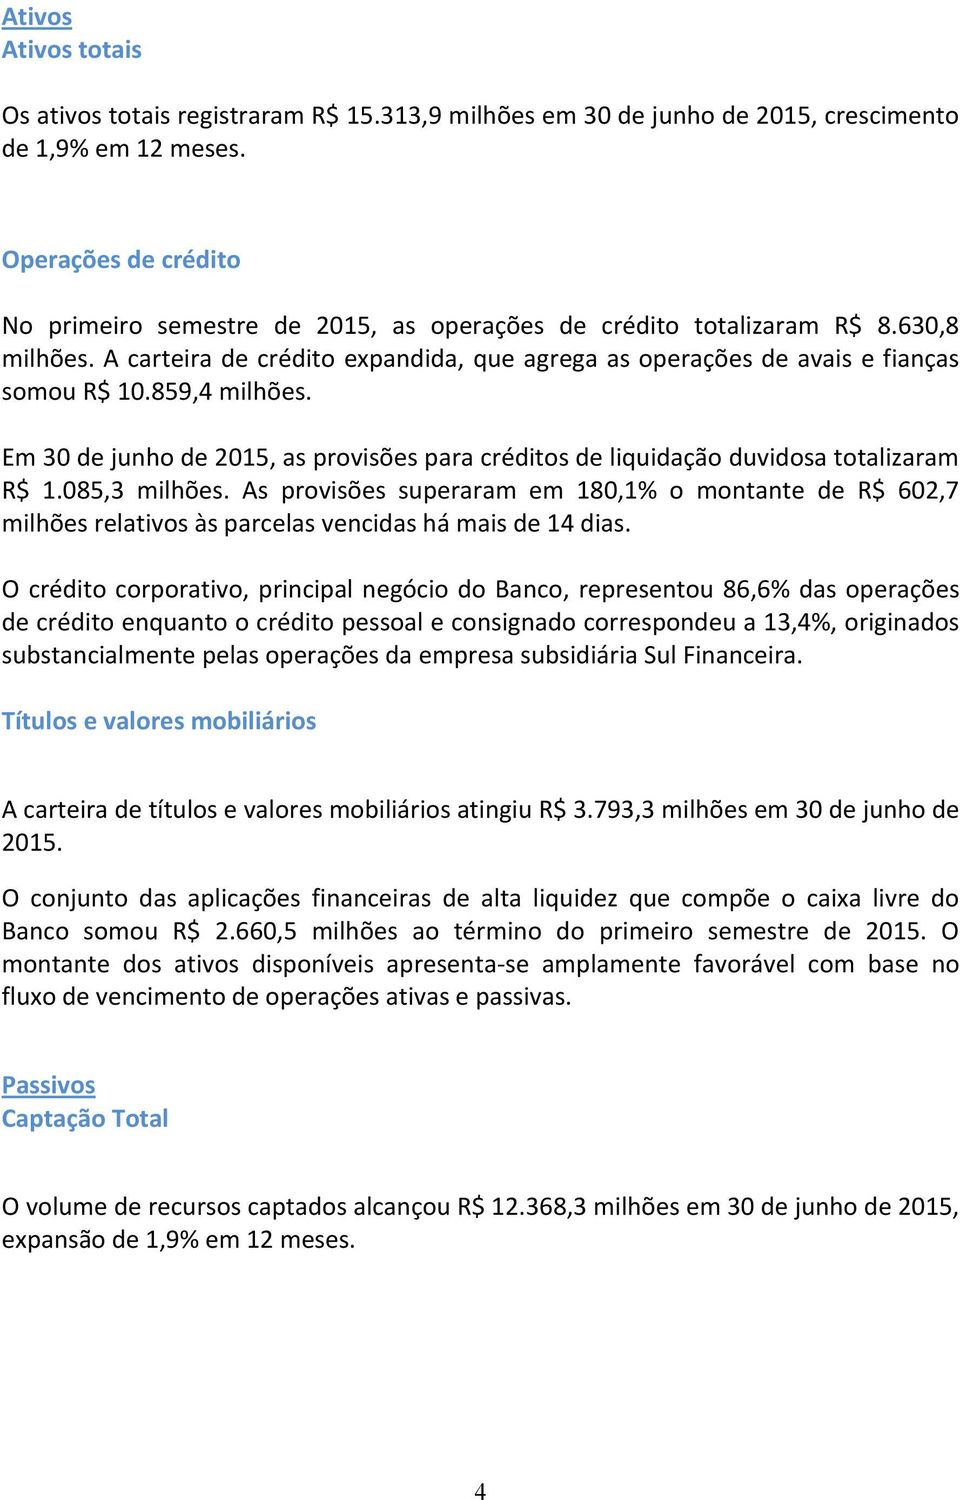 Em 30 de junho de 2015, as provisões para créditos de liquidação duvidosa totalizaram R$ 1.085,3 milhões.